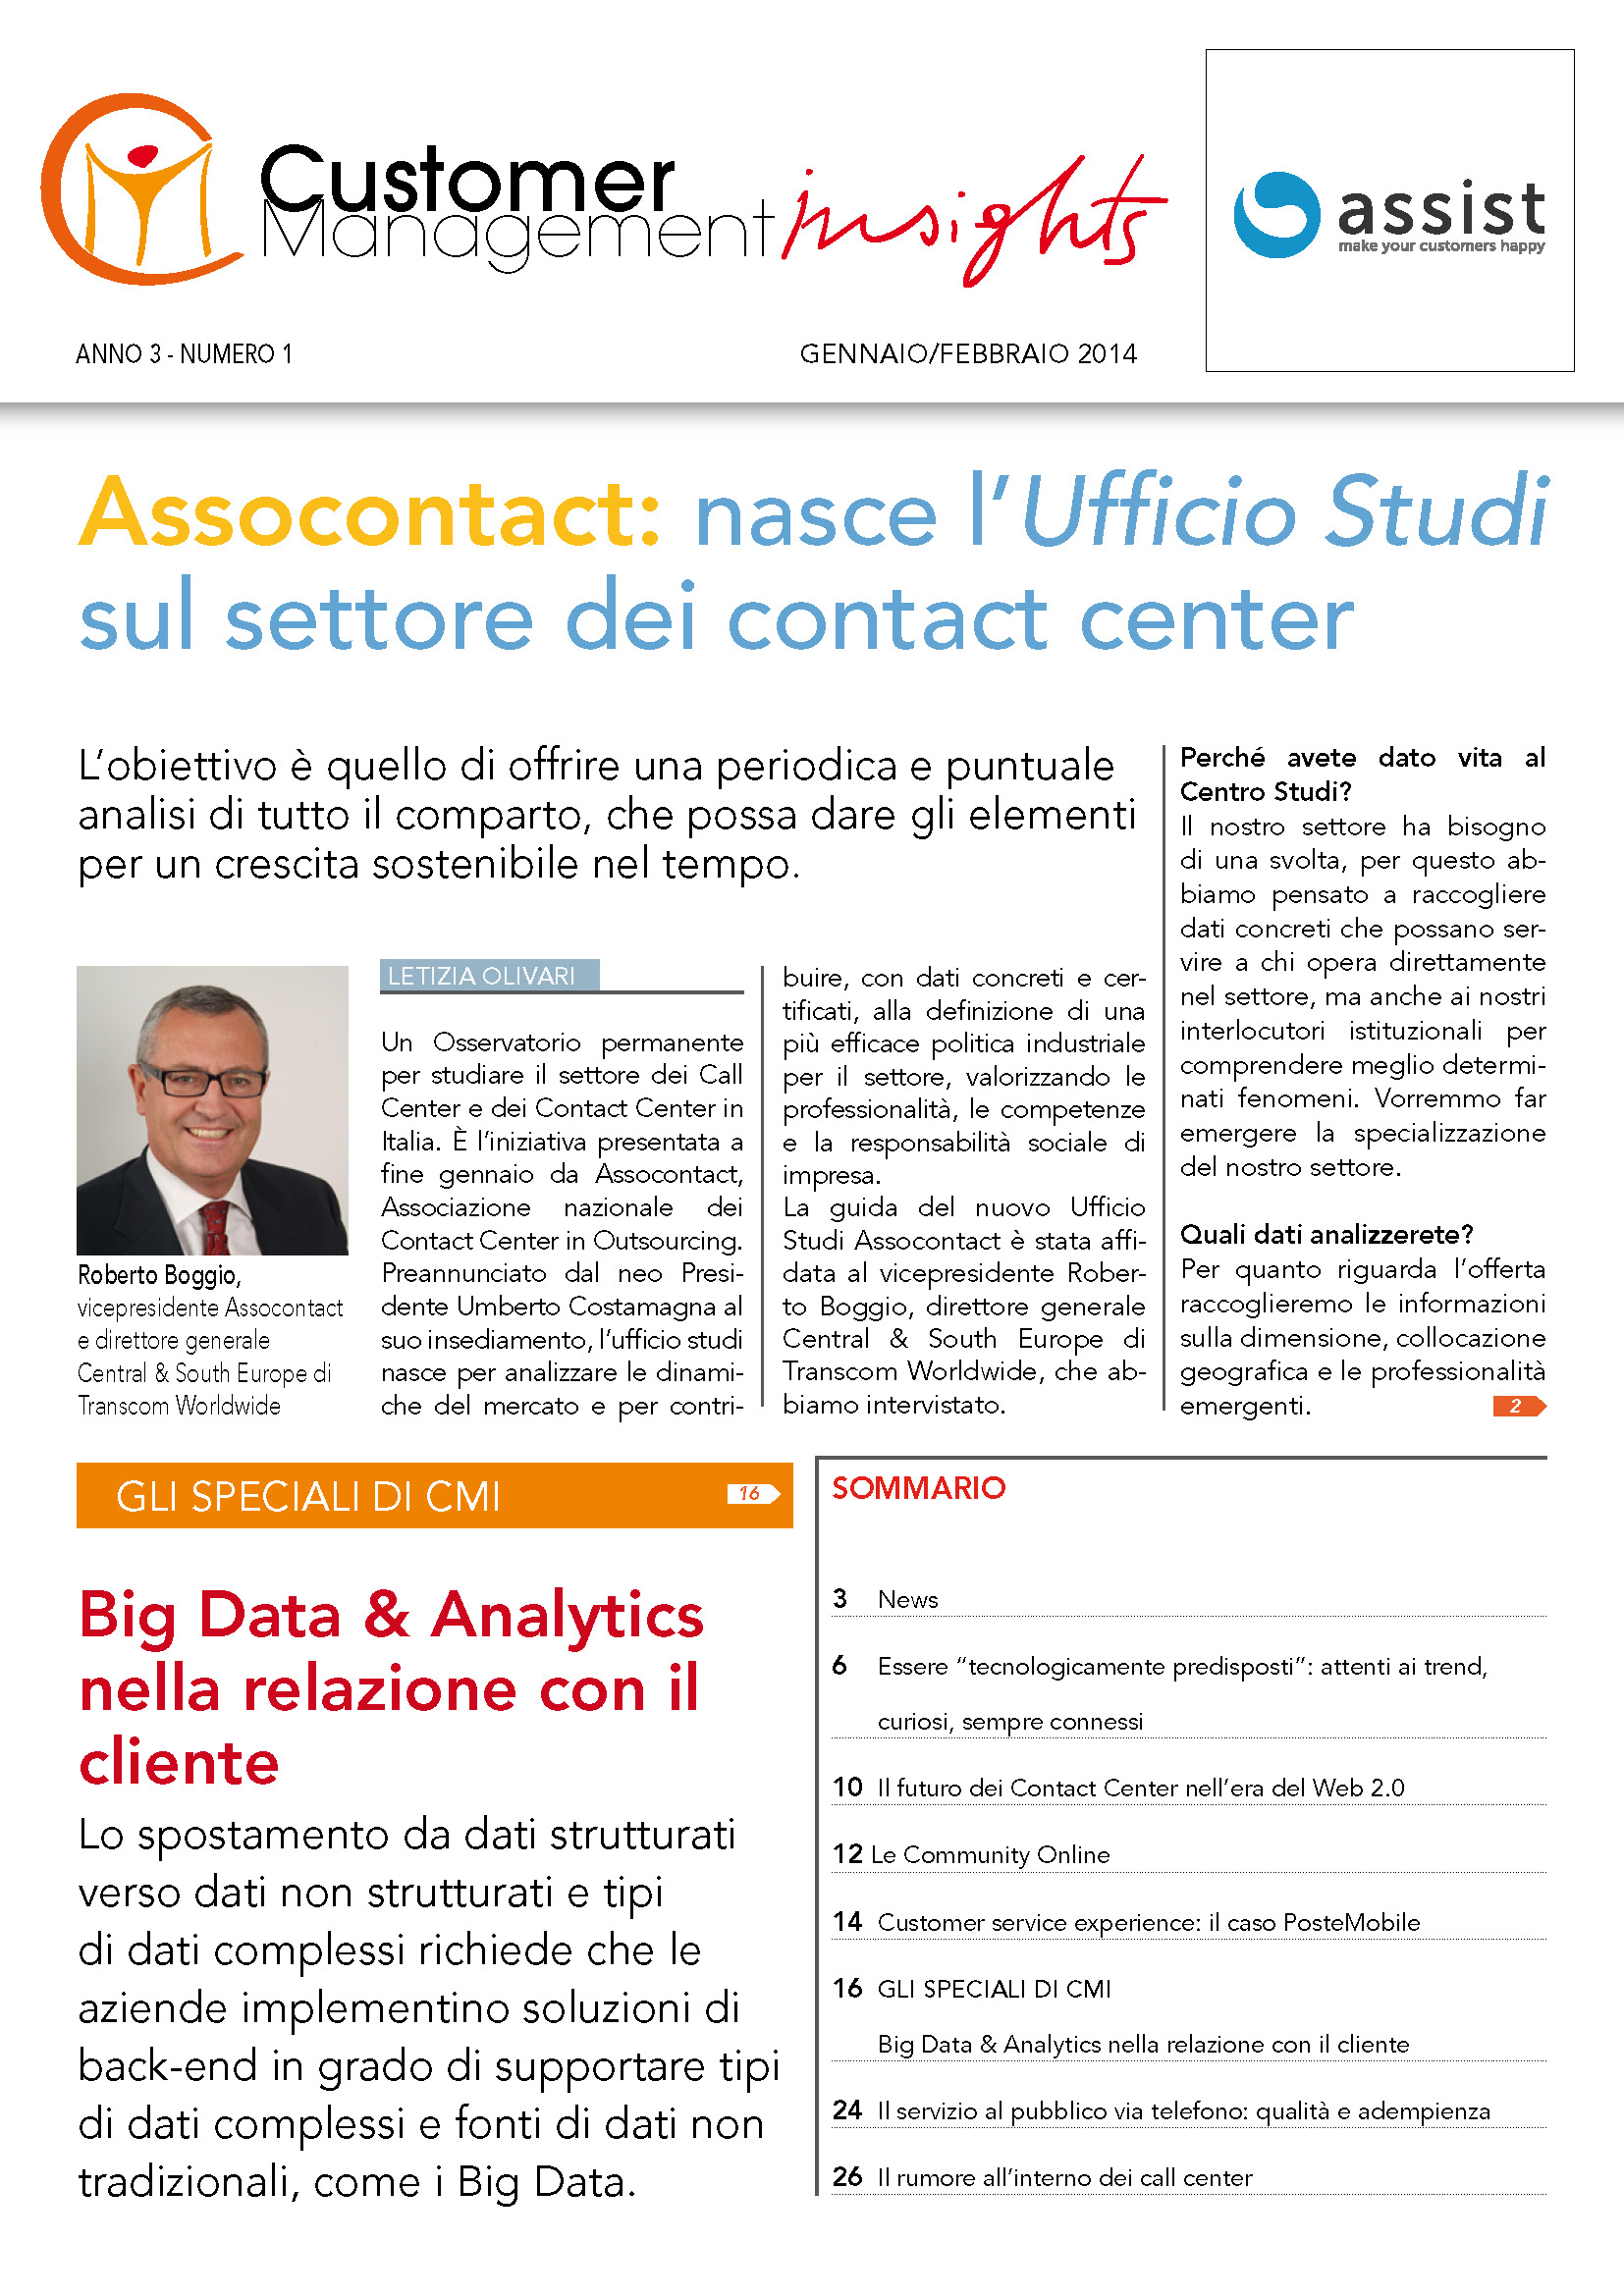 Gennaio-Febbraio 2014 – Big Data & Analytics nella relazione con il cliente